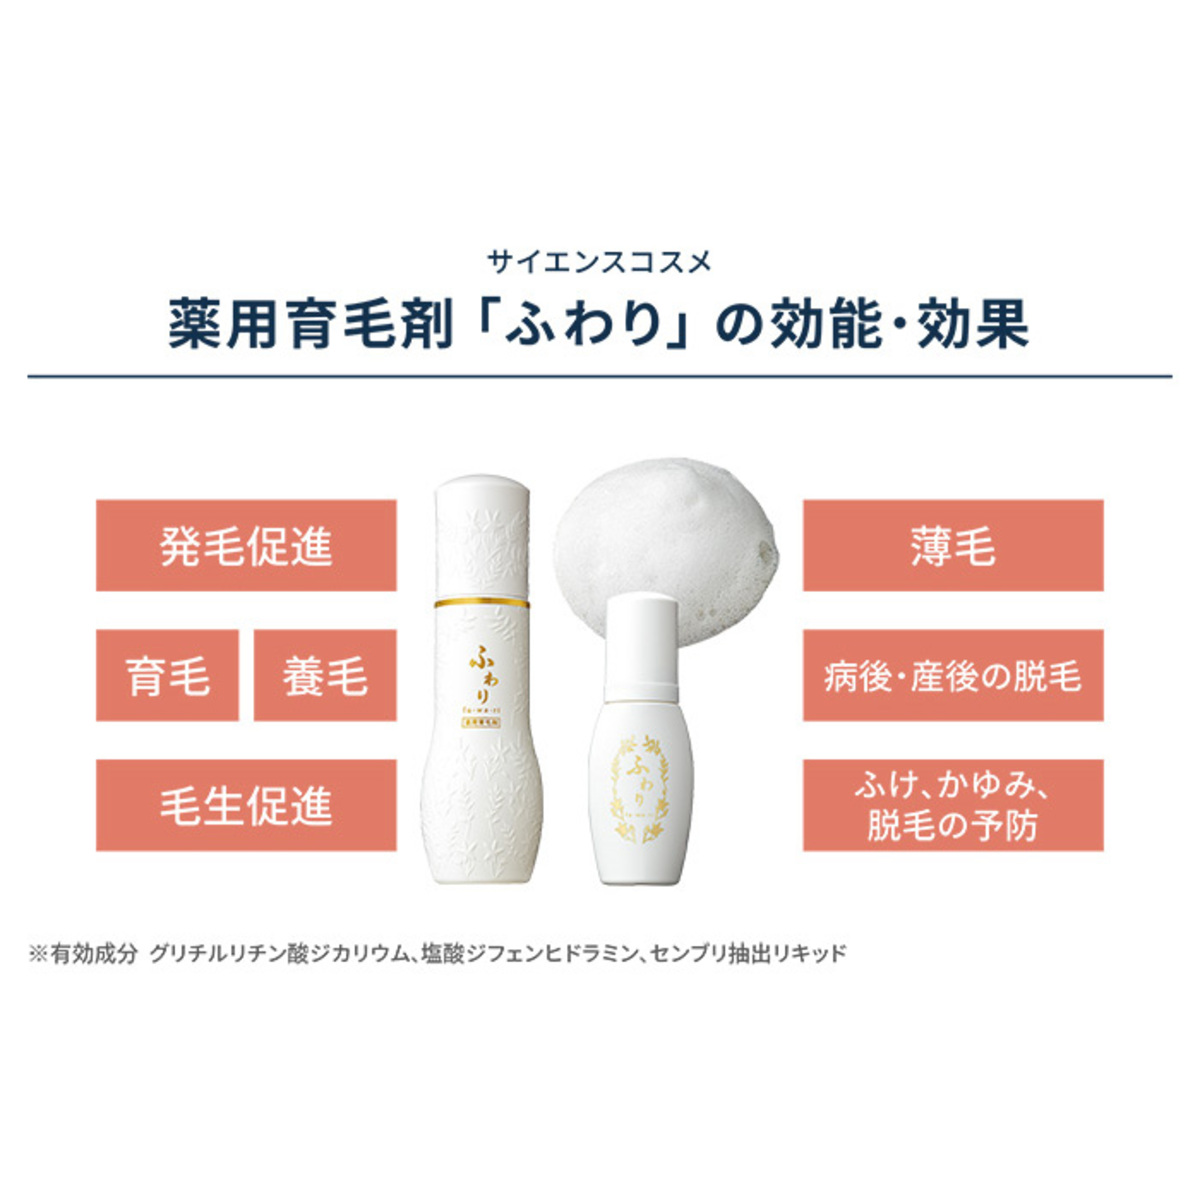 ふわり薬用育毛剤2本 ミニサイズプレゼント特別セット ふわり - QVC.jp